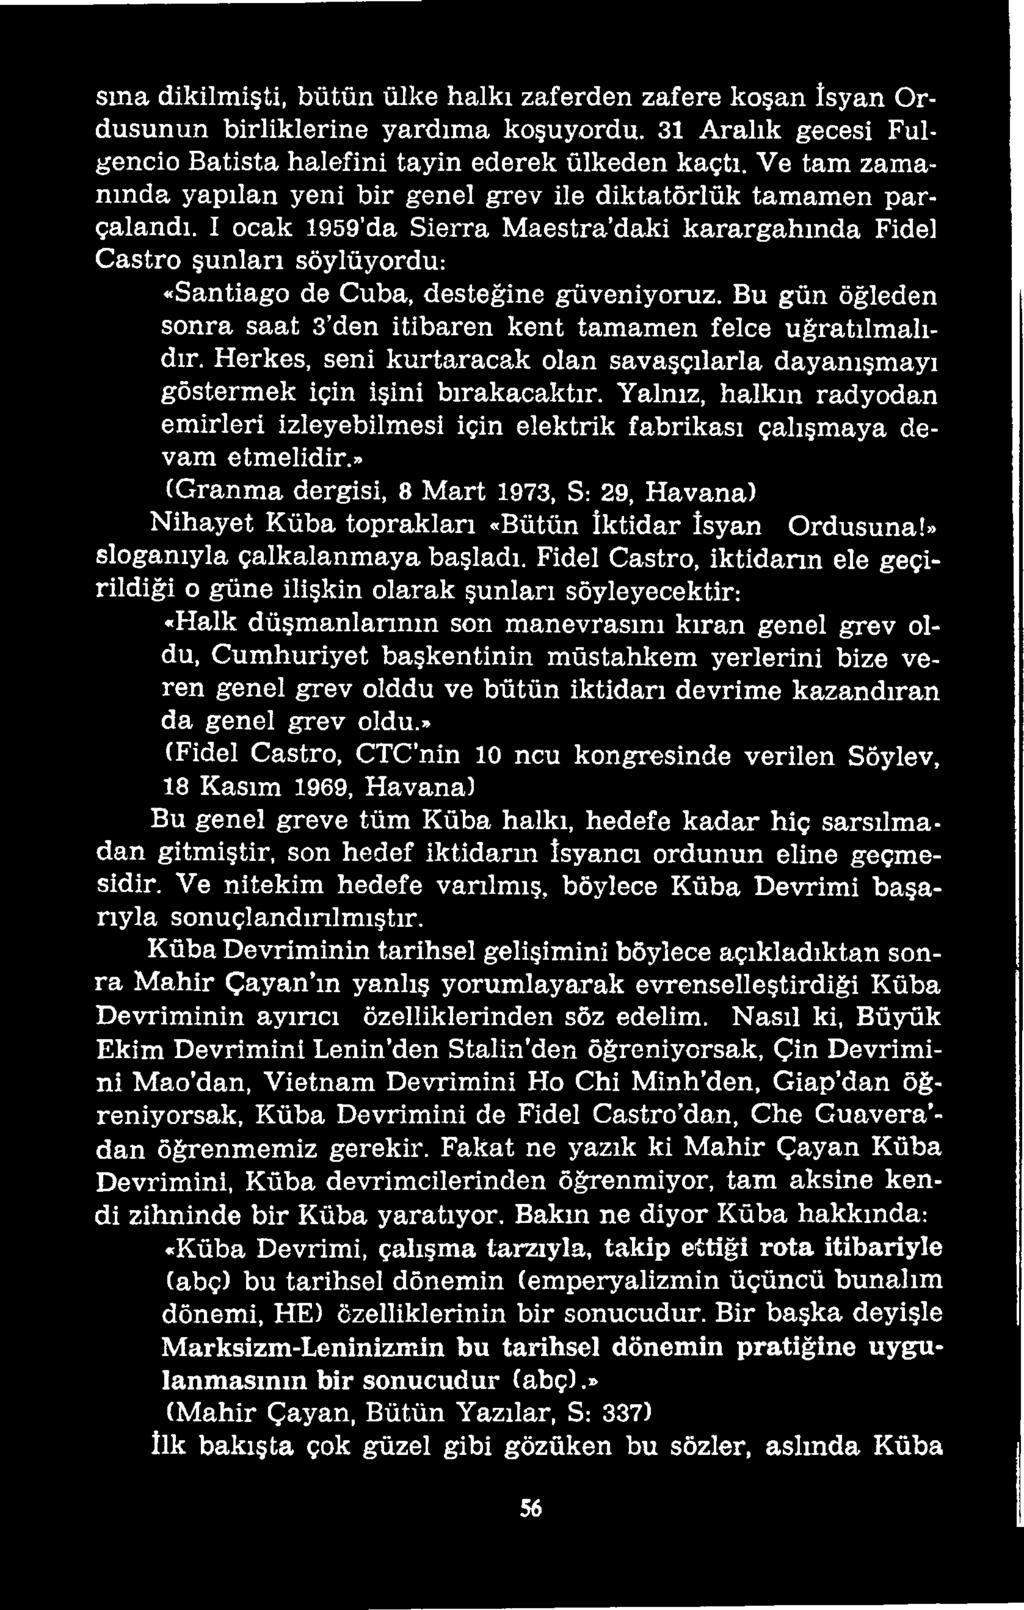 » (Granma dergisi, 8 Mart 1973, S: 29, Havana) Nihayet Küba toprakları «Bütün İktidar İsyan Ordusuna!» sloganıyla çalkalanmaya başladı.